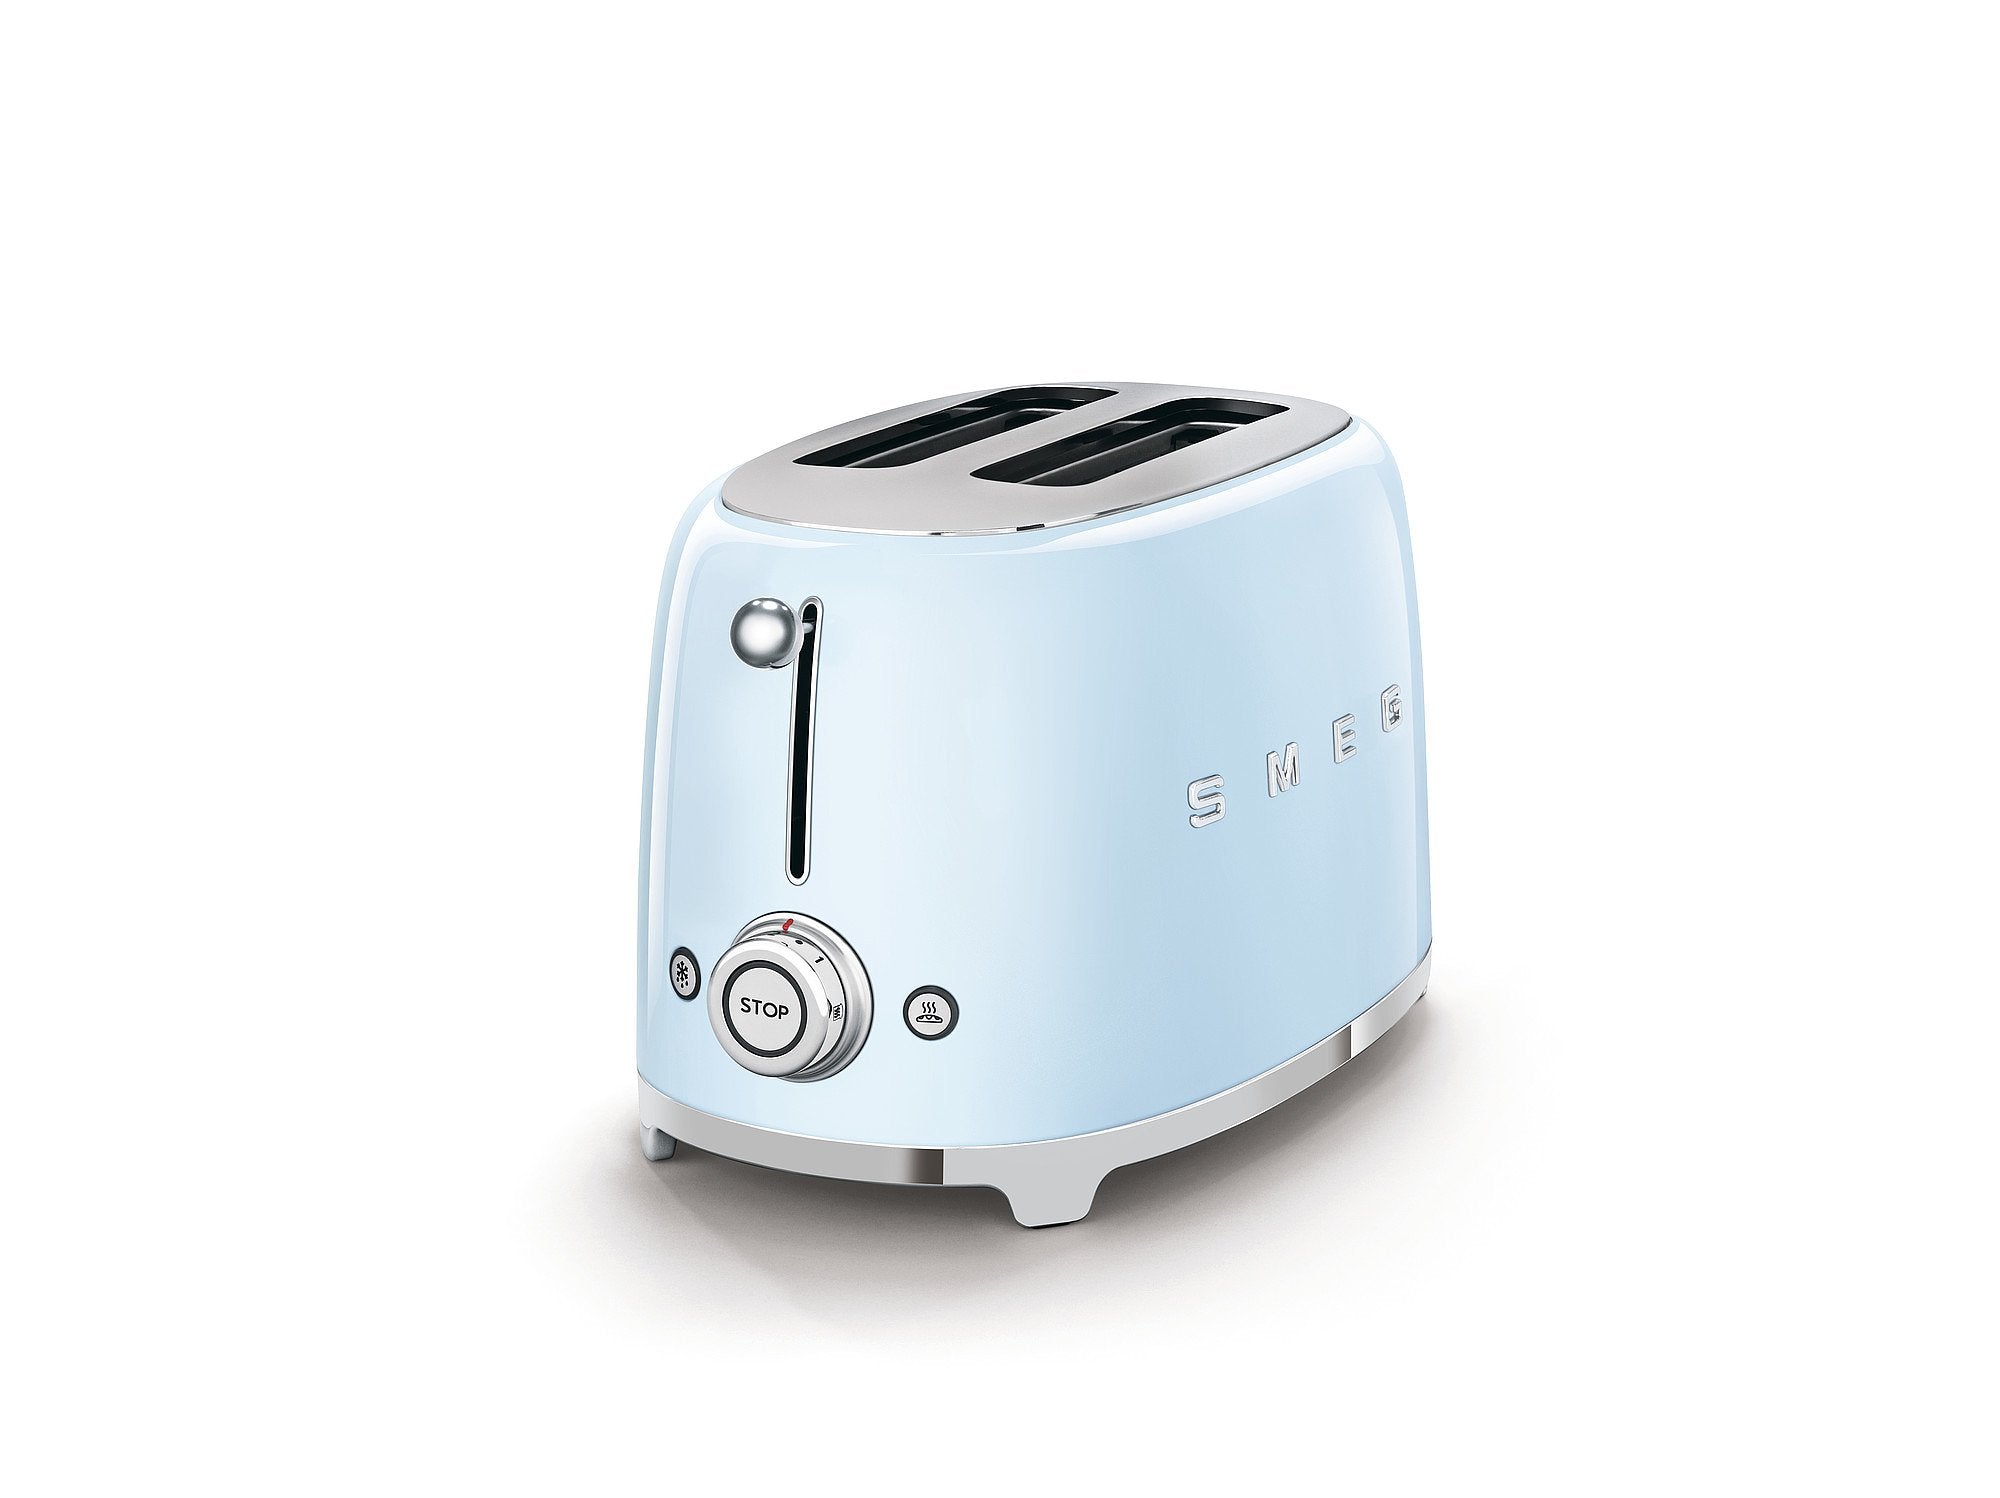 Smeg toaster - pastel blue